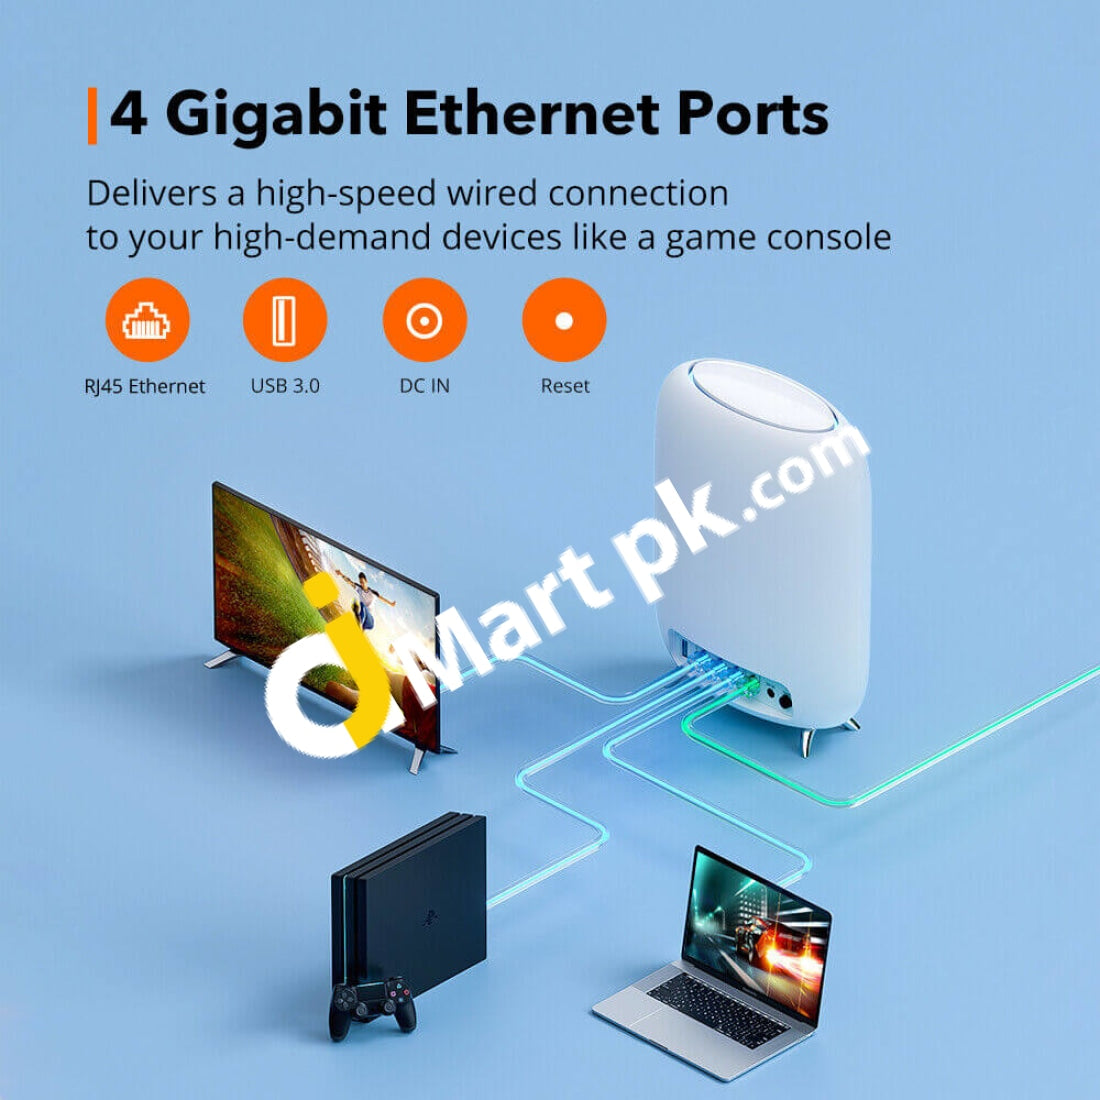 TP-Link RE350 AC1200 Wi-Fi Range Extender w/ Gigabit Ethernet Port